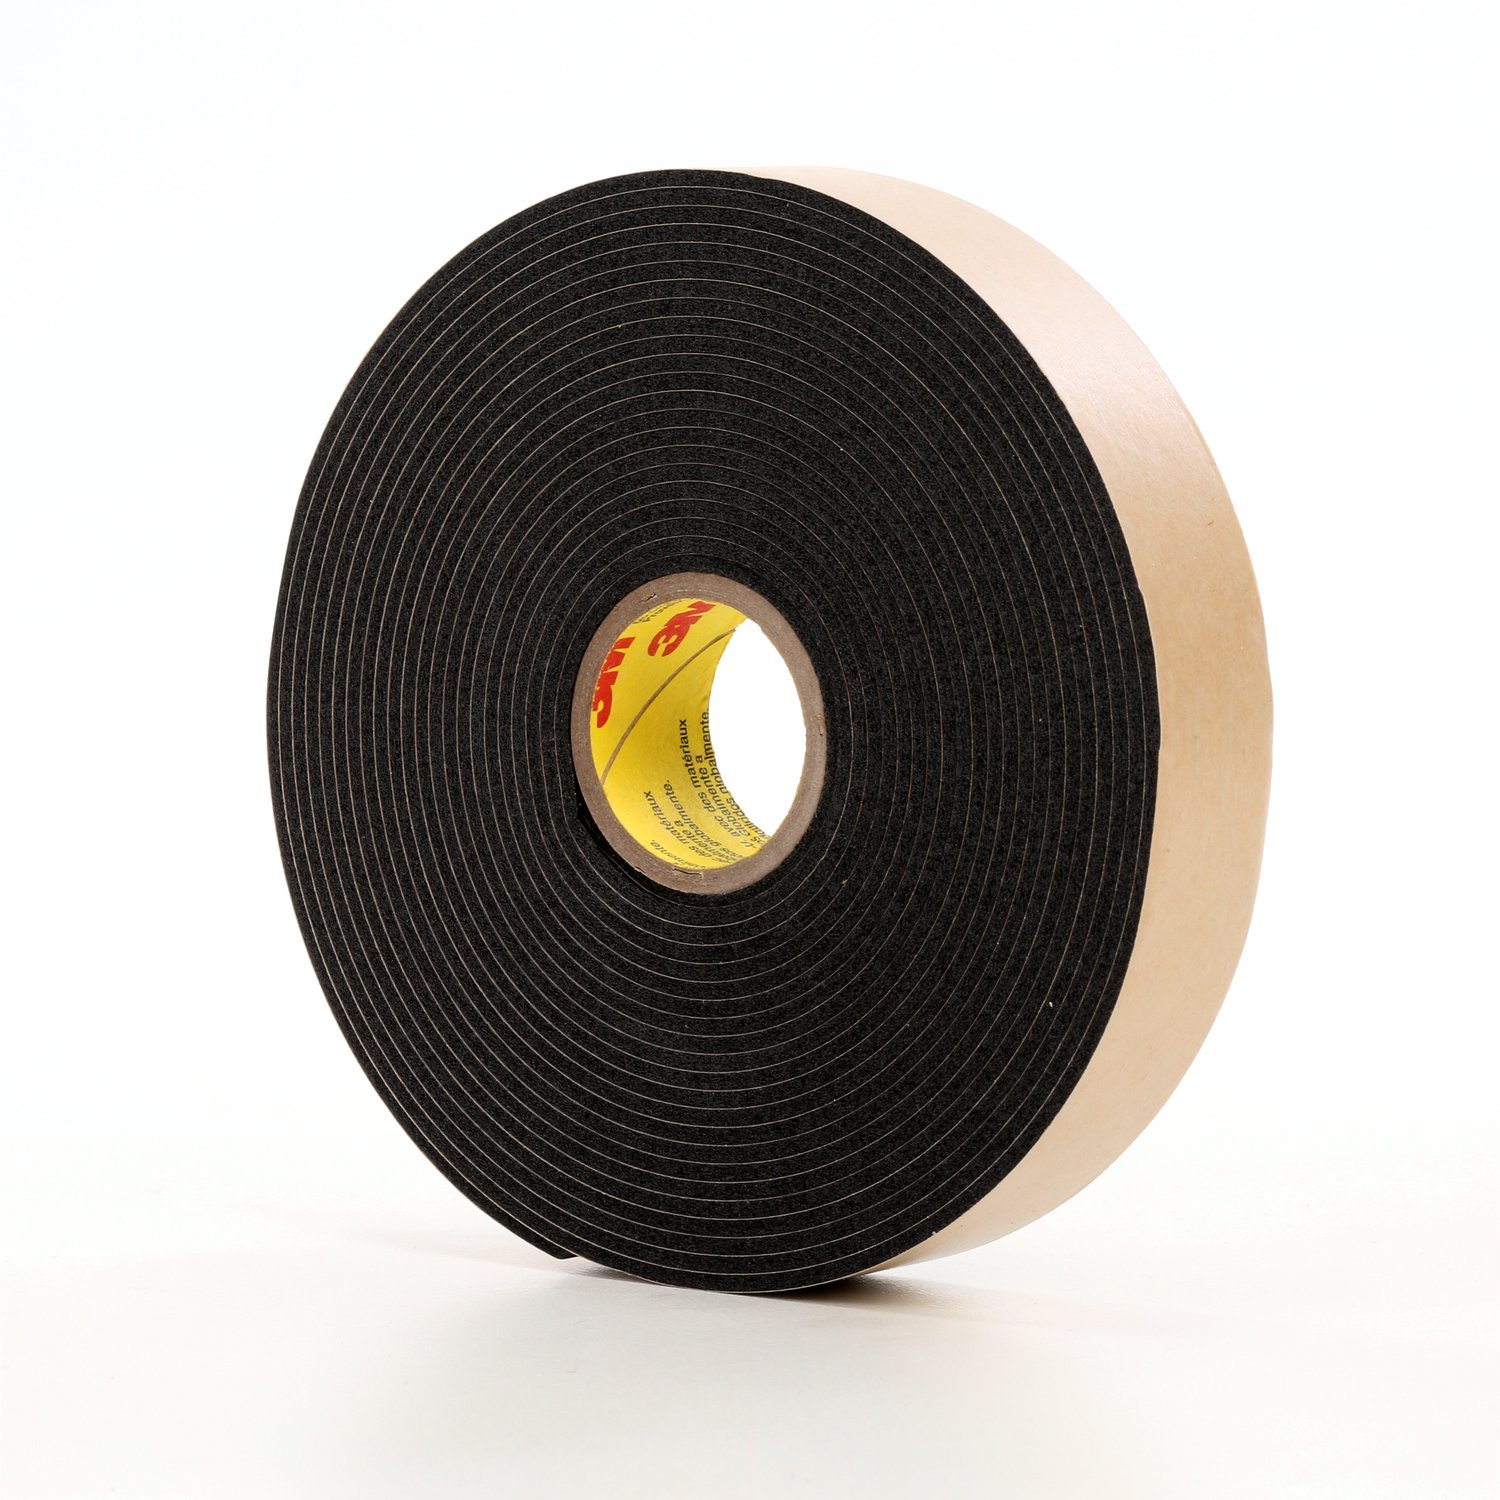 7100035722 - 3M Double Coated Polyethylene Foam Tape 4496B, Black, 54 in x 36 Yds,
62 mil, 1 roll per case